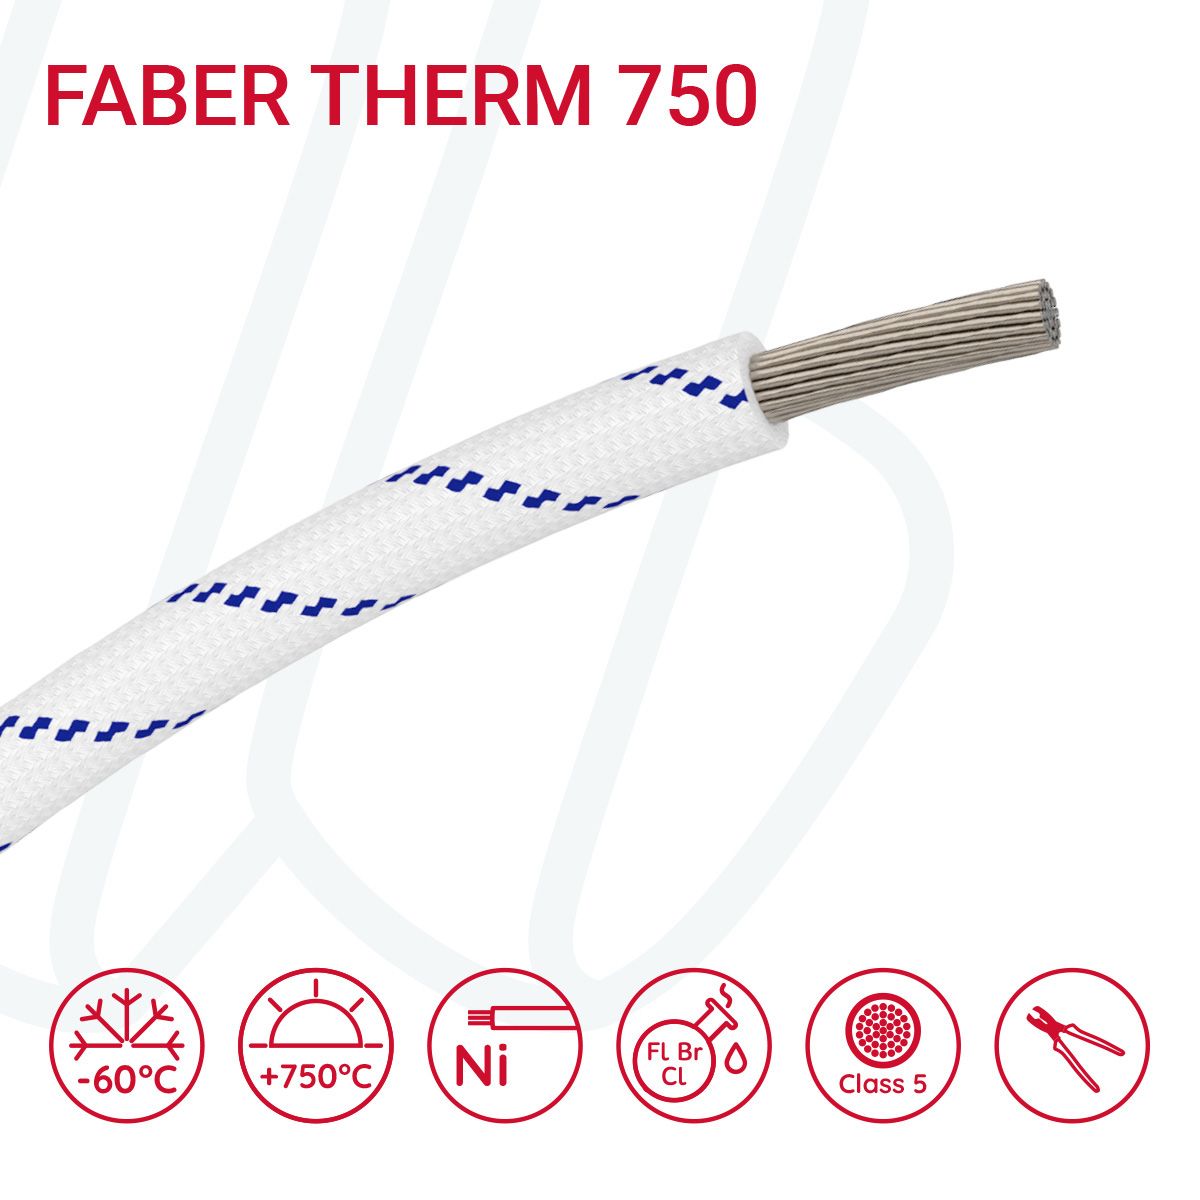 Провід термостійкий FABER THERM 750 01X10 в плетінні з синьою ниткою, 01, 10